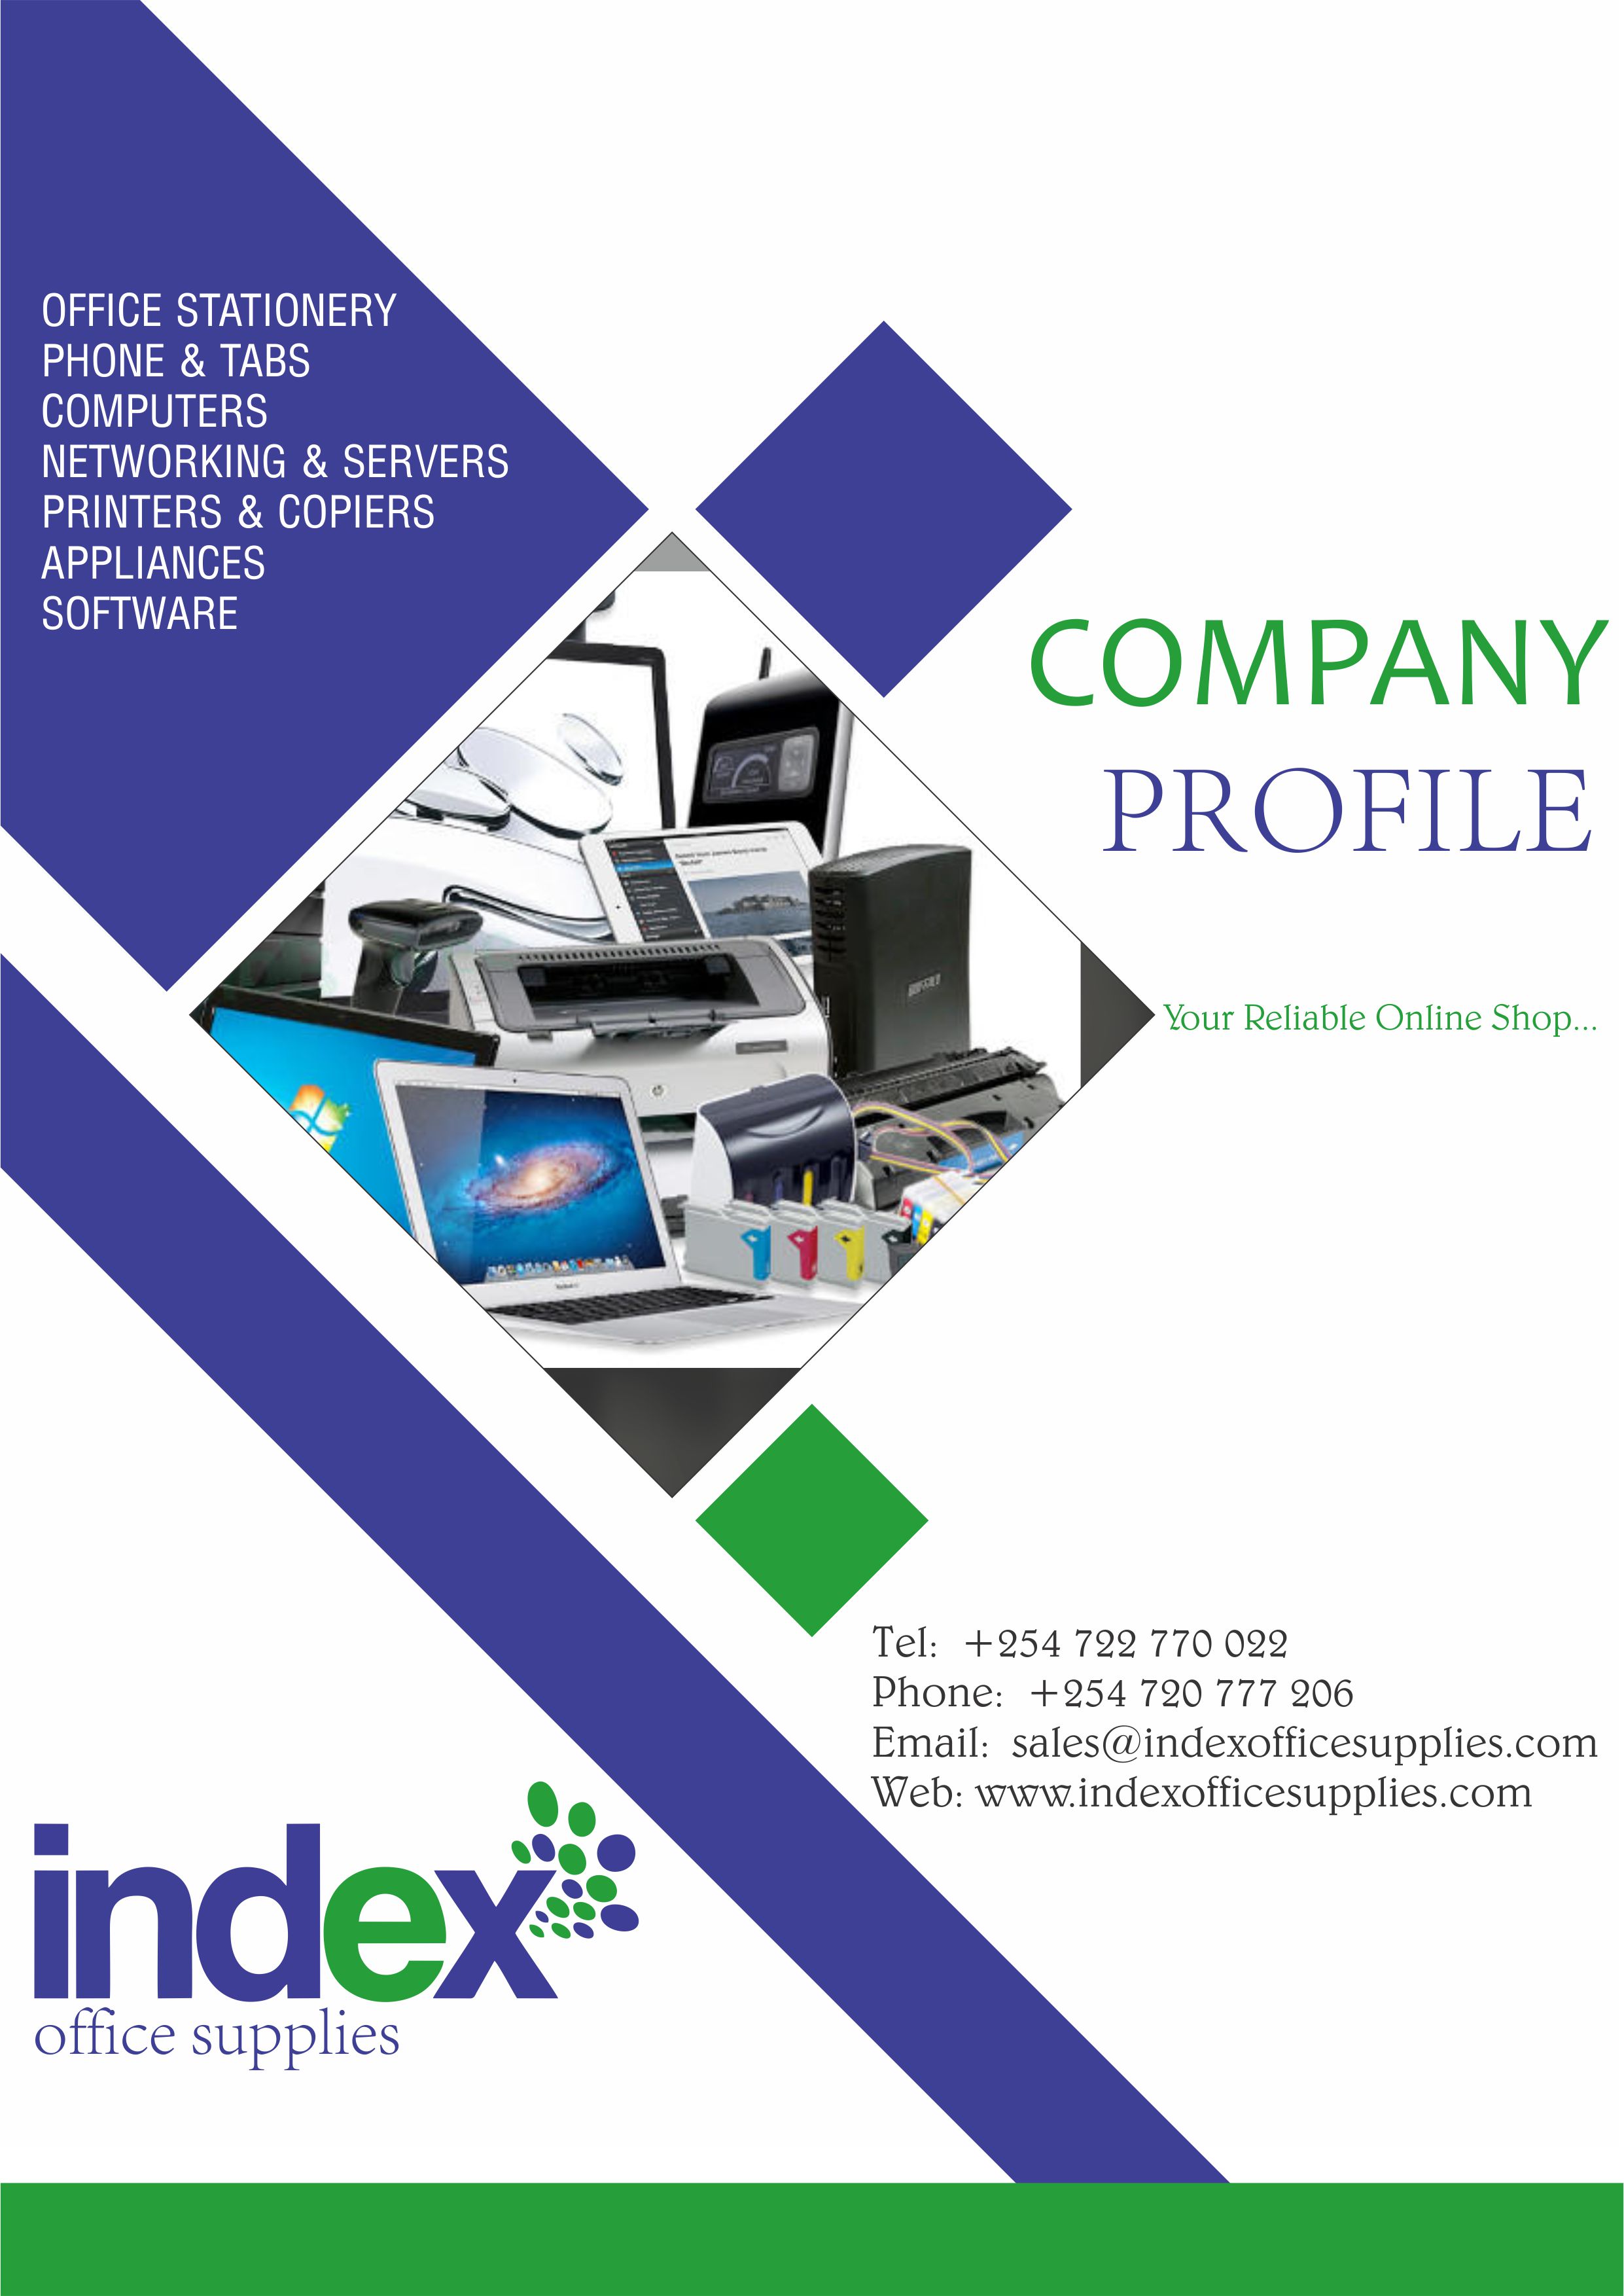 Index Office Supplies